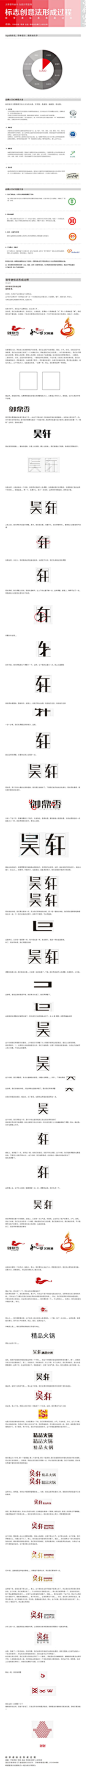 (2)条新消息 教程——设计 | 视觉中国